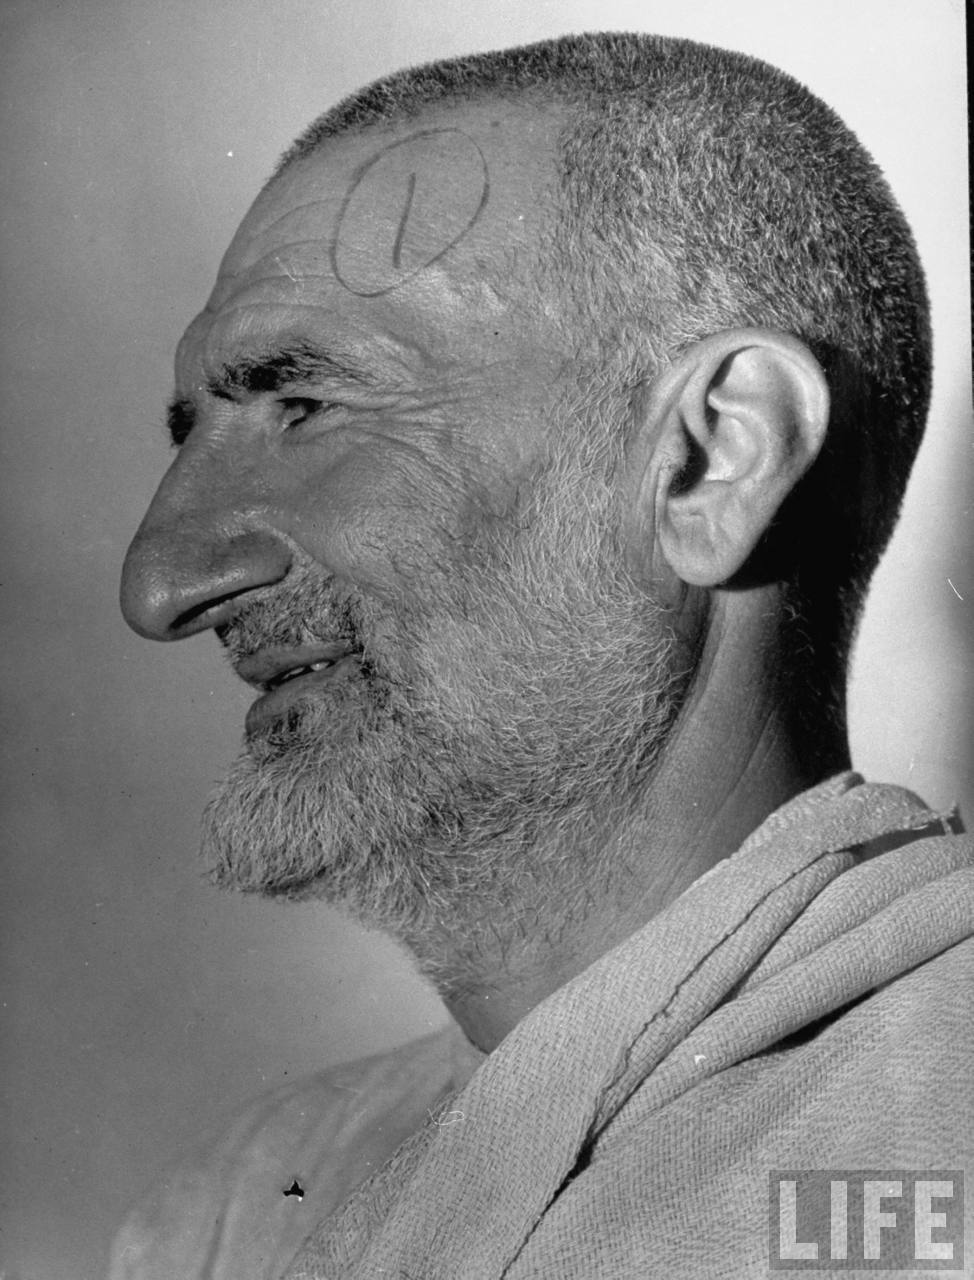 Abdul Ghaffar Khan, know as the Frontier Gandhi - 1946